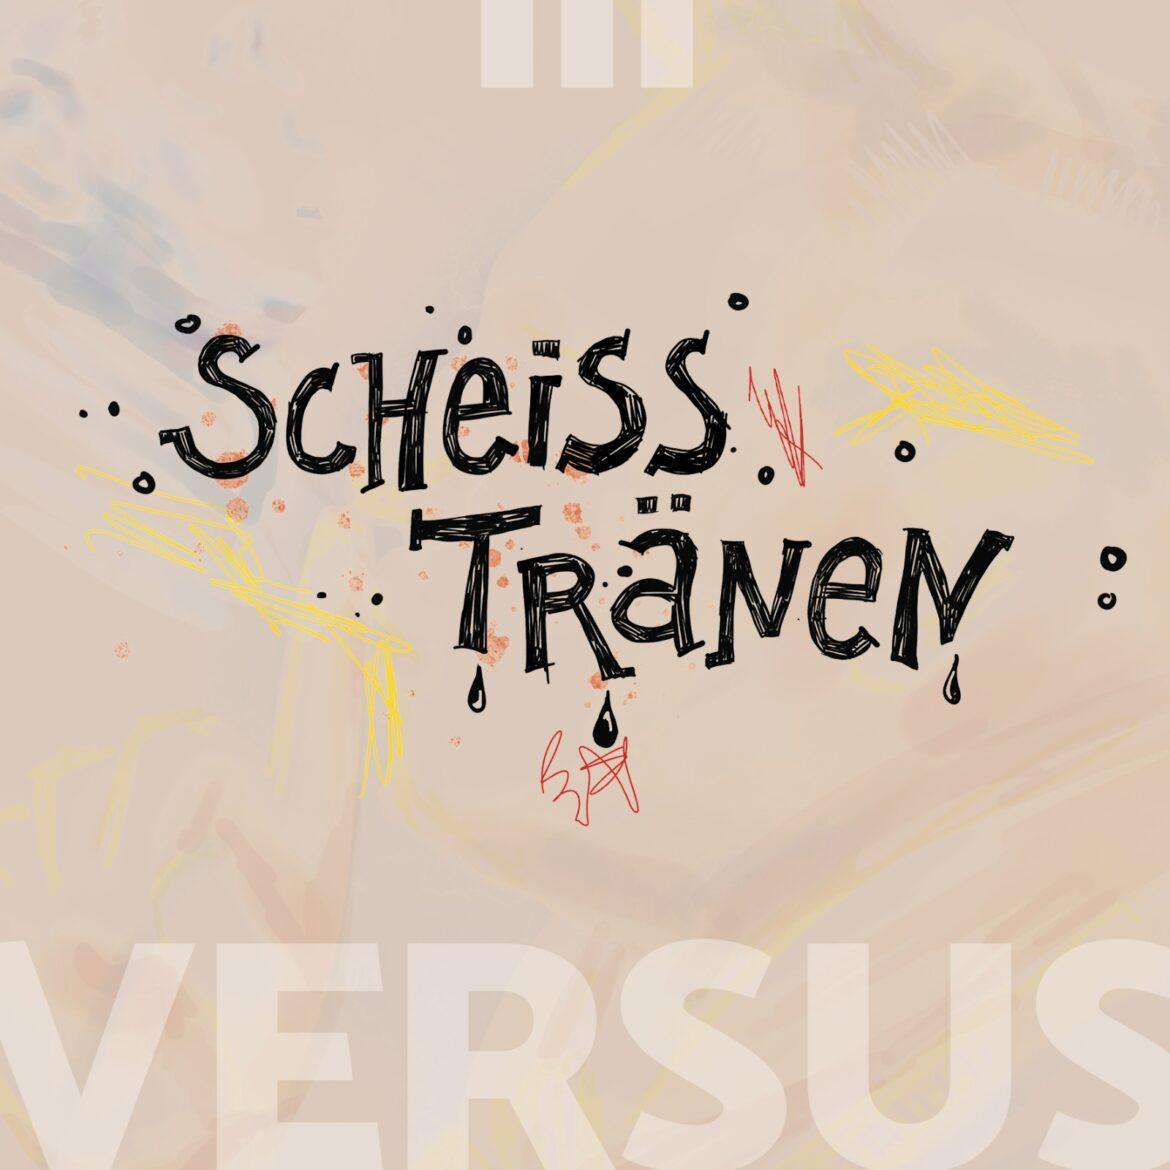 Cover für die zweite VERSUS Single "Scheisstränen" zeigt eine freundliche Grafik mit gemalten Tränen